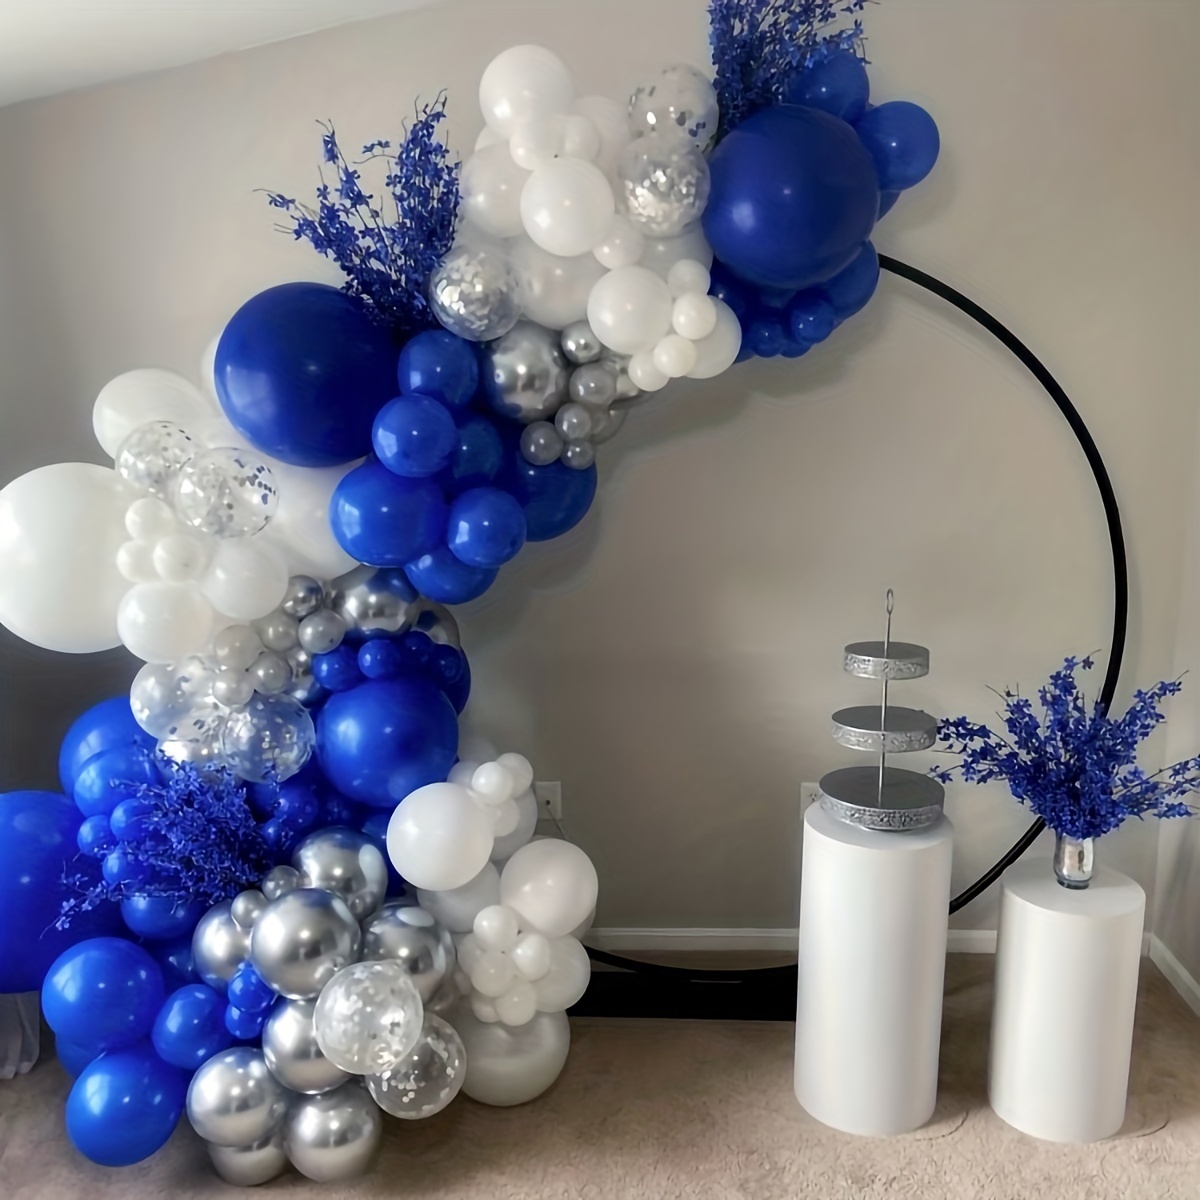 Kit de arco de guirnalda de globos azules, globos azules plateados y  blancos, decoraciones de cumpleaños azules, fiesta de boda, baby shower,  kit de